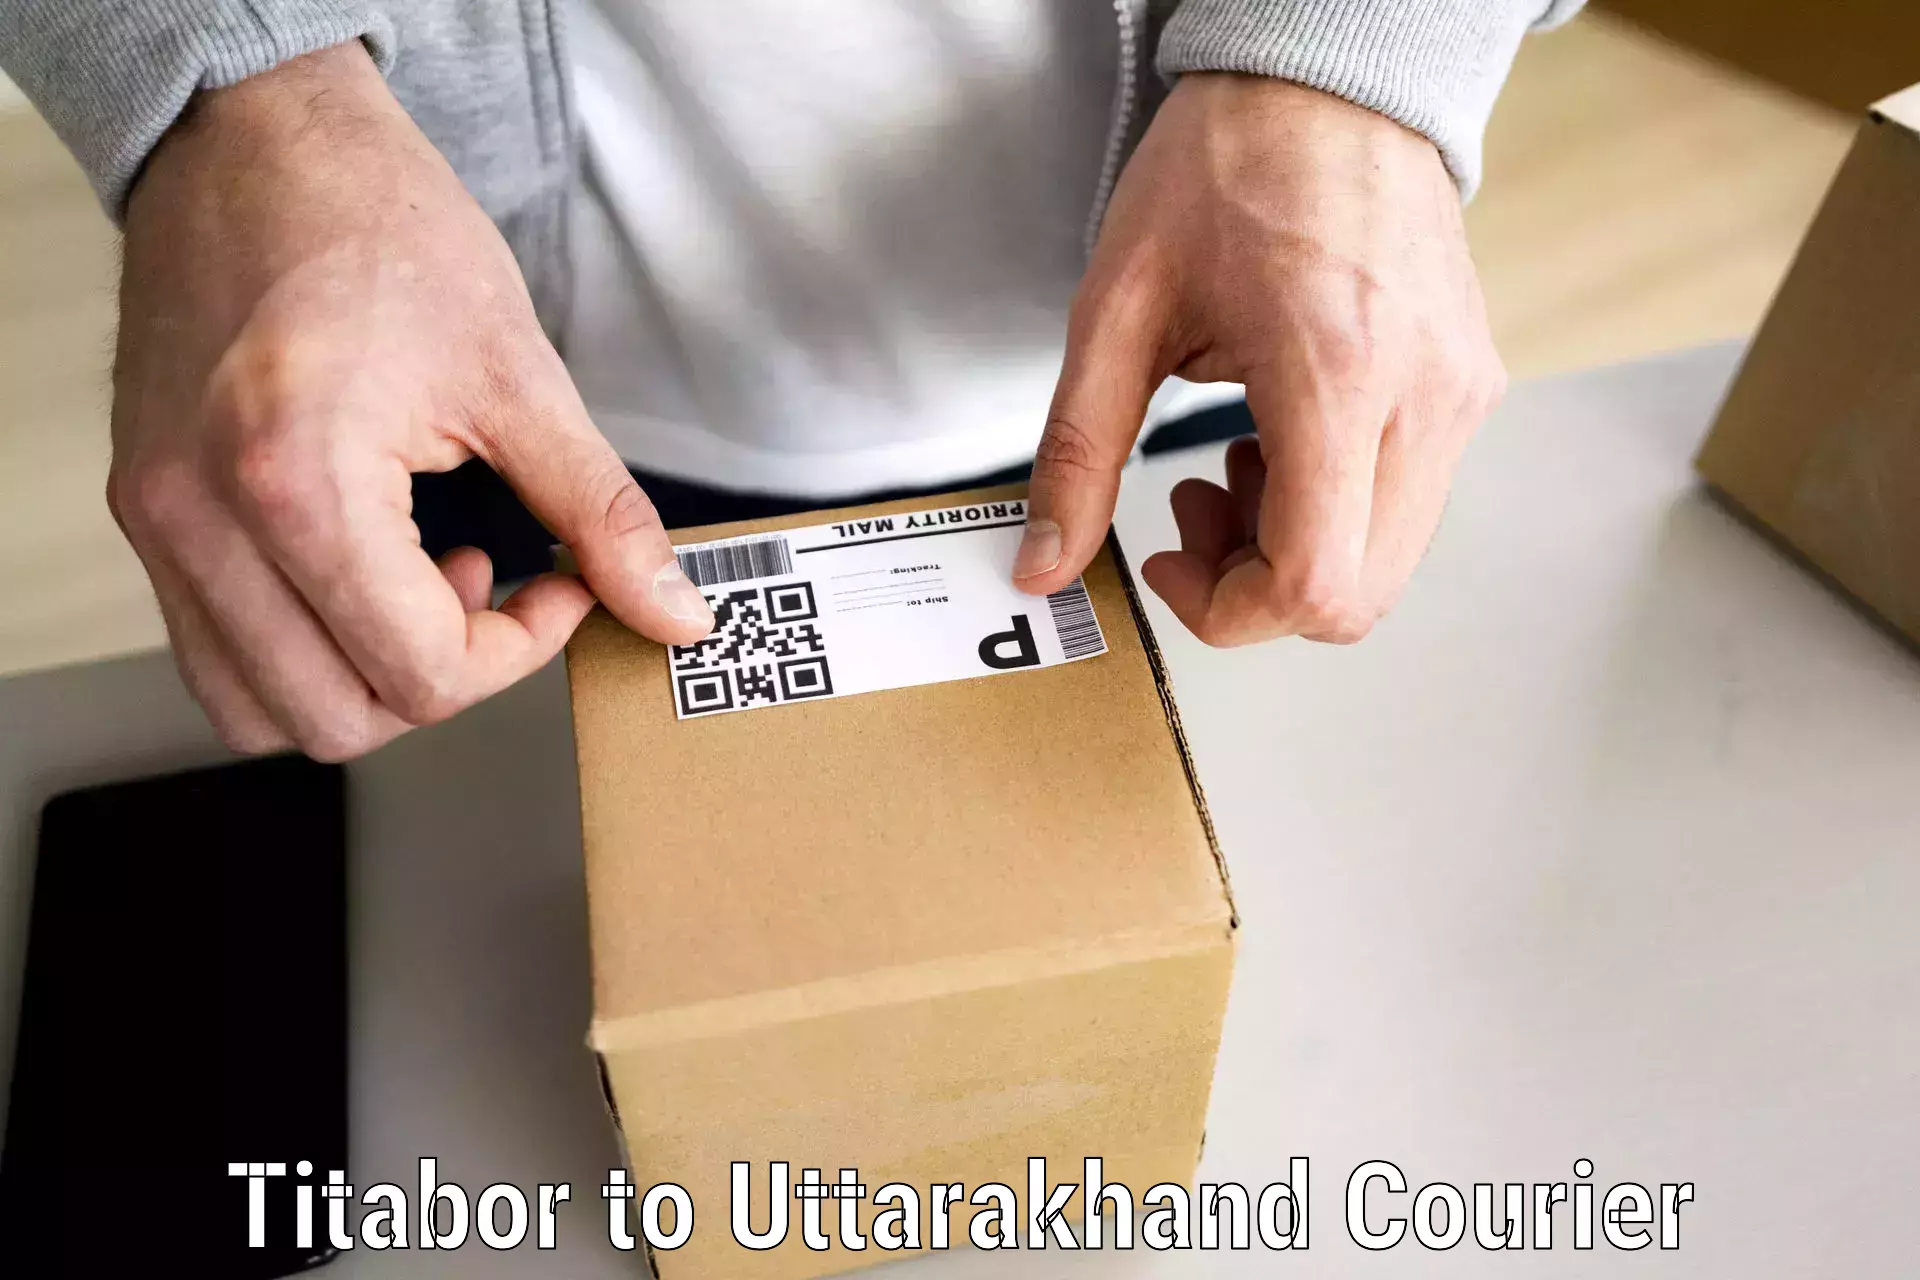 Household moving service Titabor to Uttarakhand